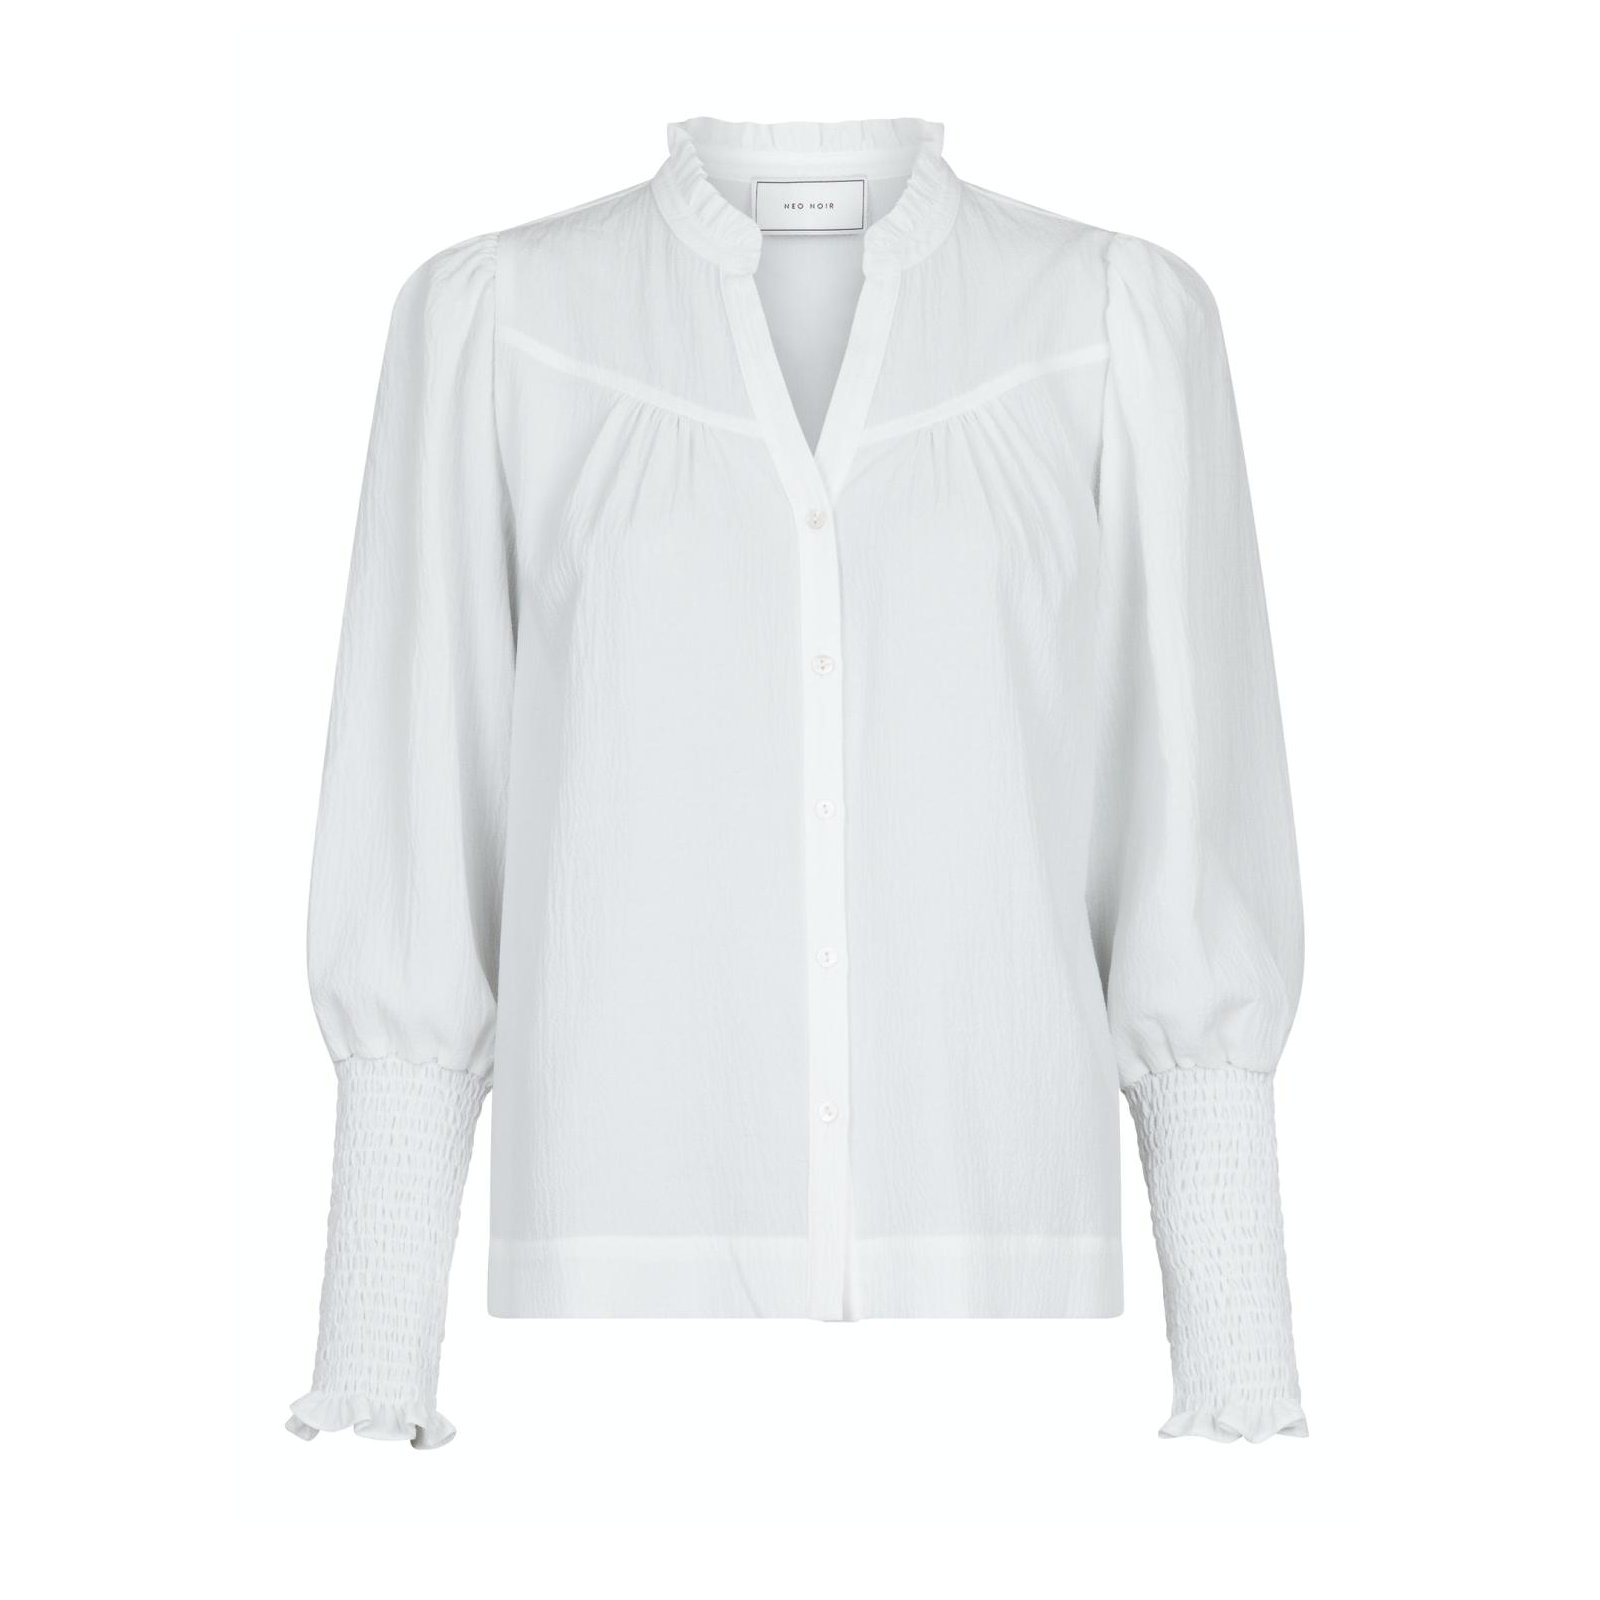 Neo Noir Camisa Solid bluse hvid